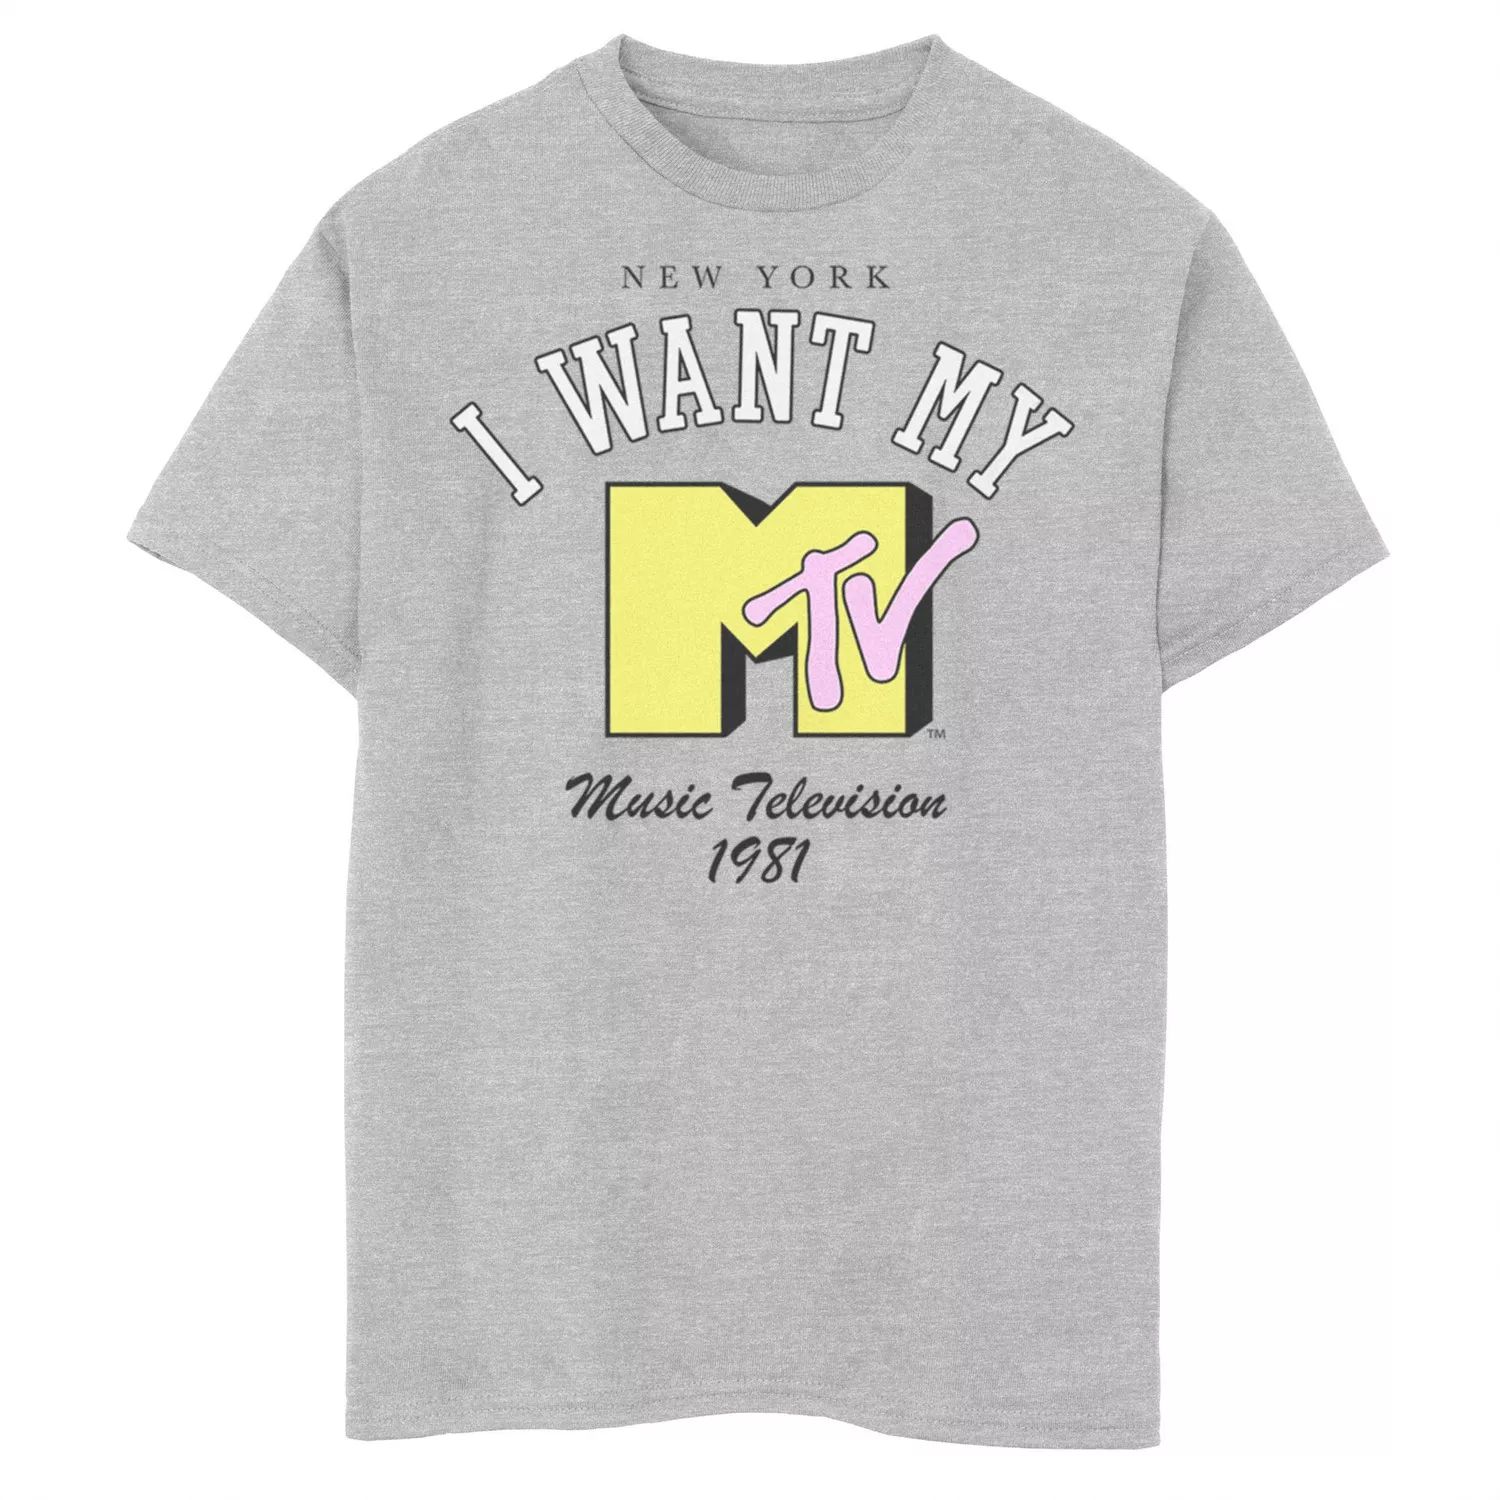 Футболка с логотипом MTV «I Want My MTV EST 1981» для мальчиков 8–20 лет Licensed Character футболка с логотипом mtv i want my mtv est 1981 для мальчиков 8–20 лет licensed character